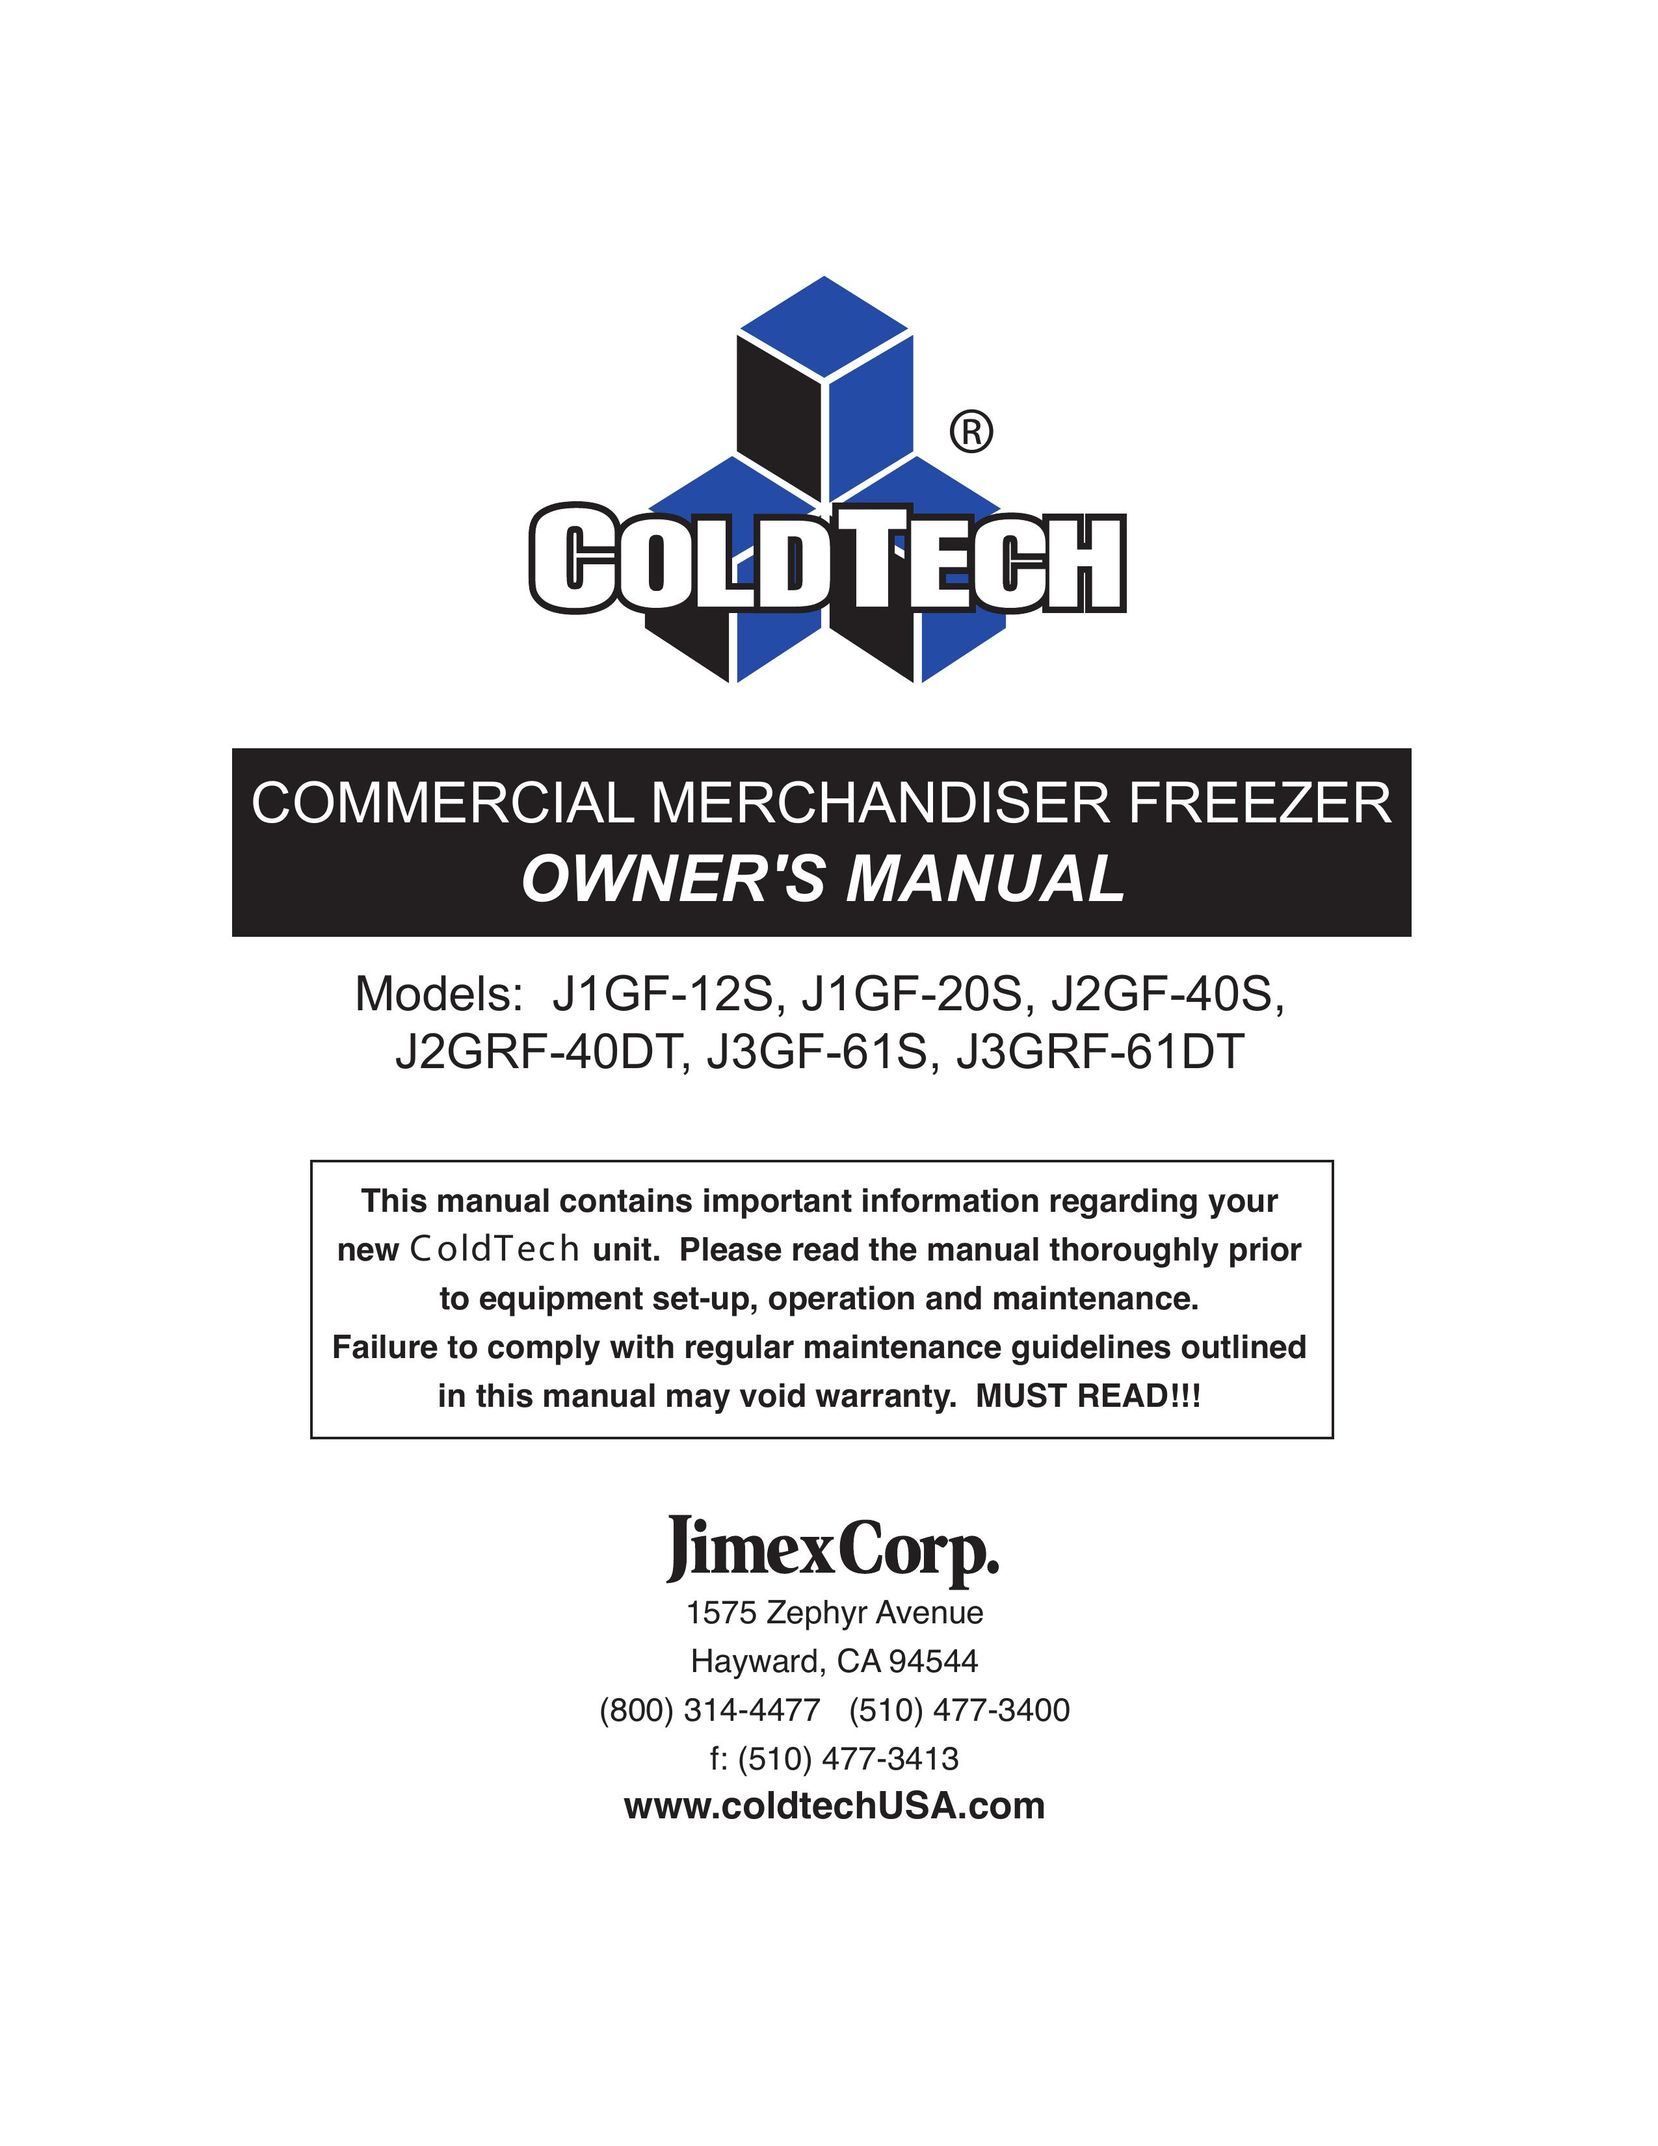 ColdTech J3GRF-61DT Freezer User Manual